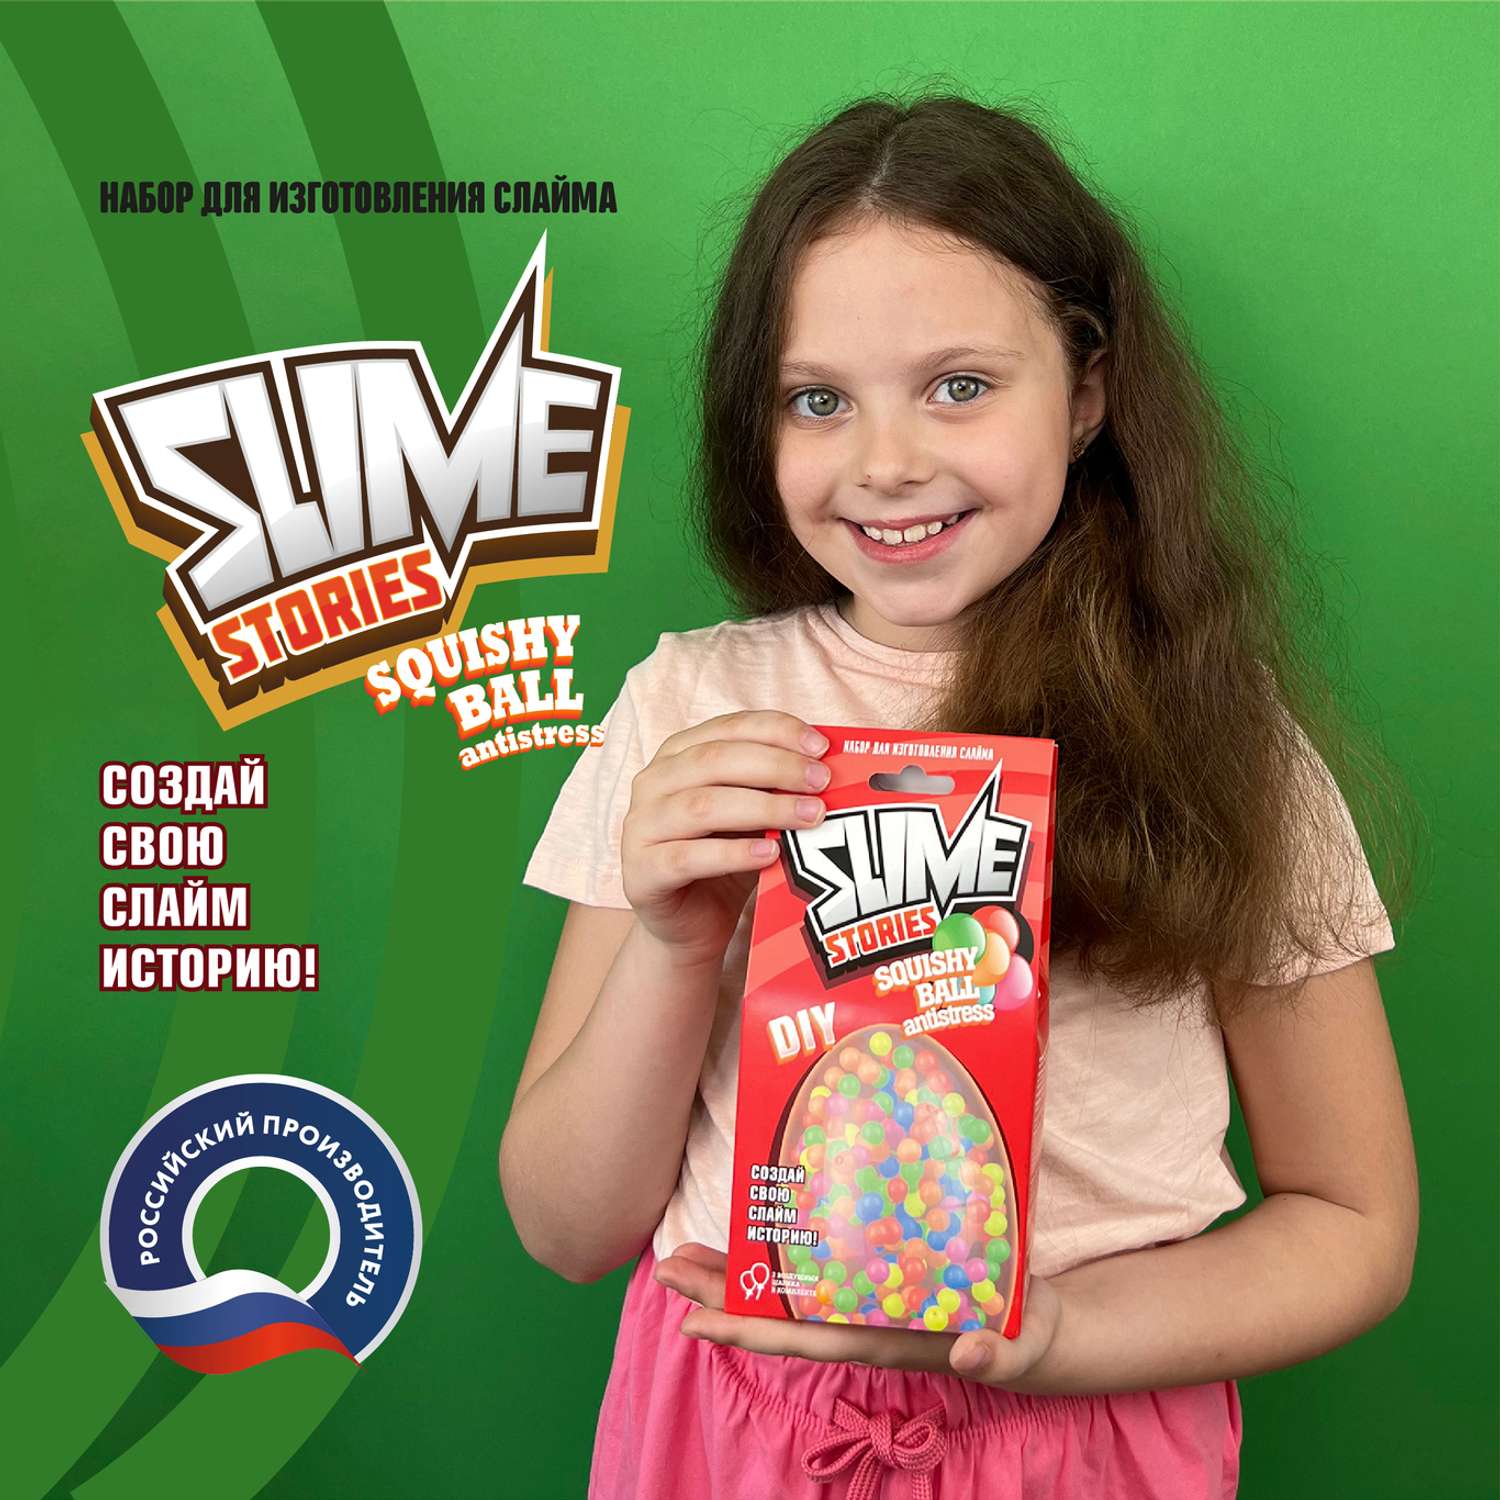 Набор для творчества ВИСМА Slime Stories Мягкий шарик - фото 2